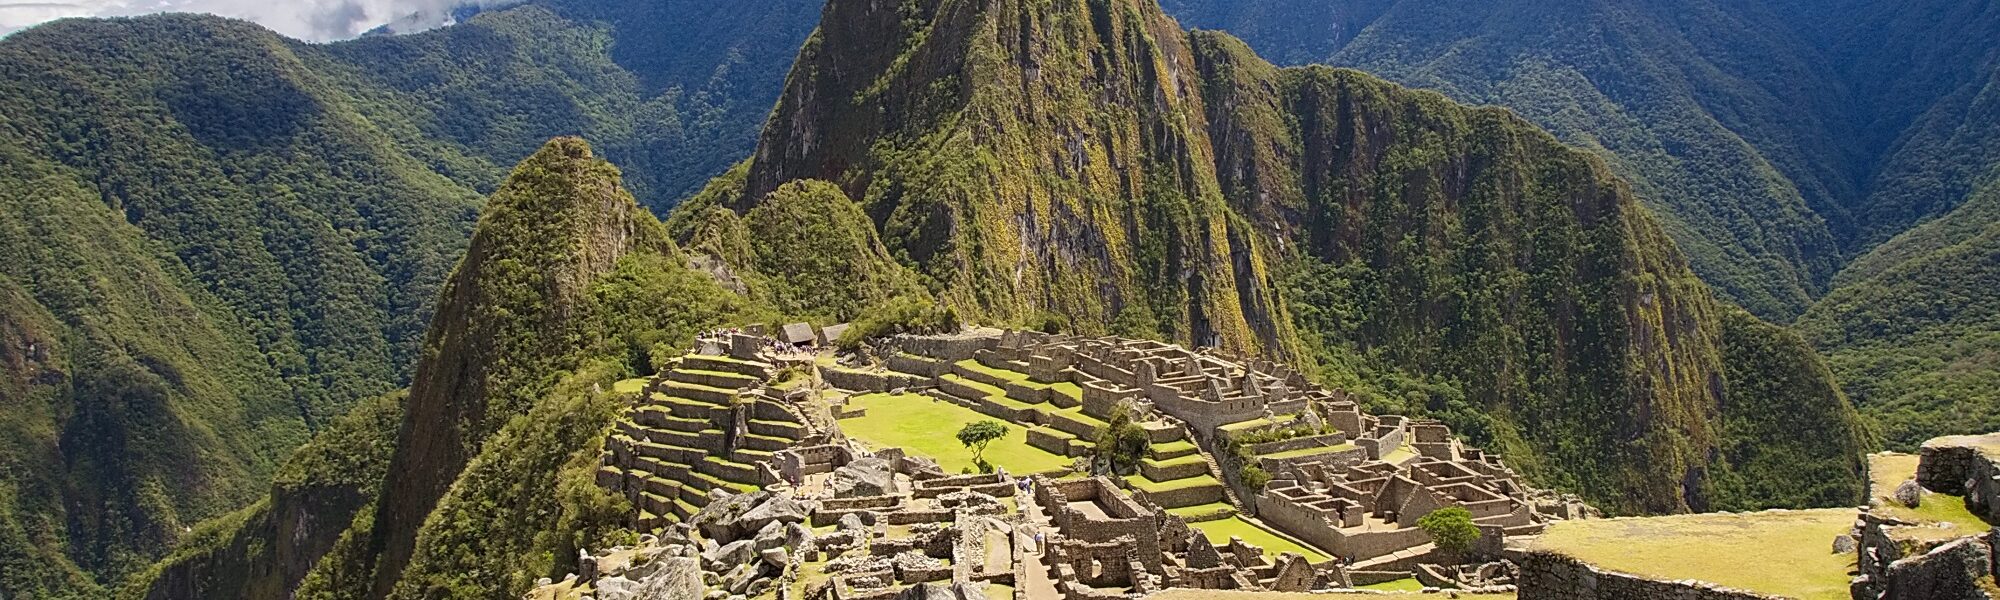 Actieve vakantie naar Peru